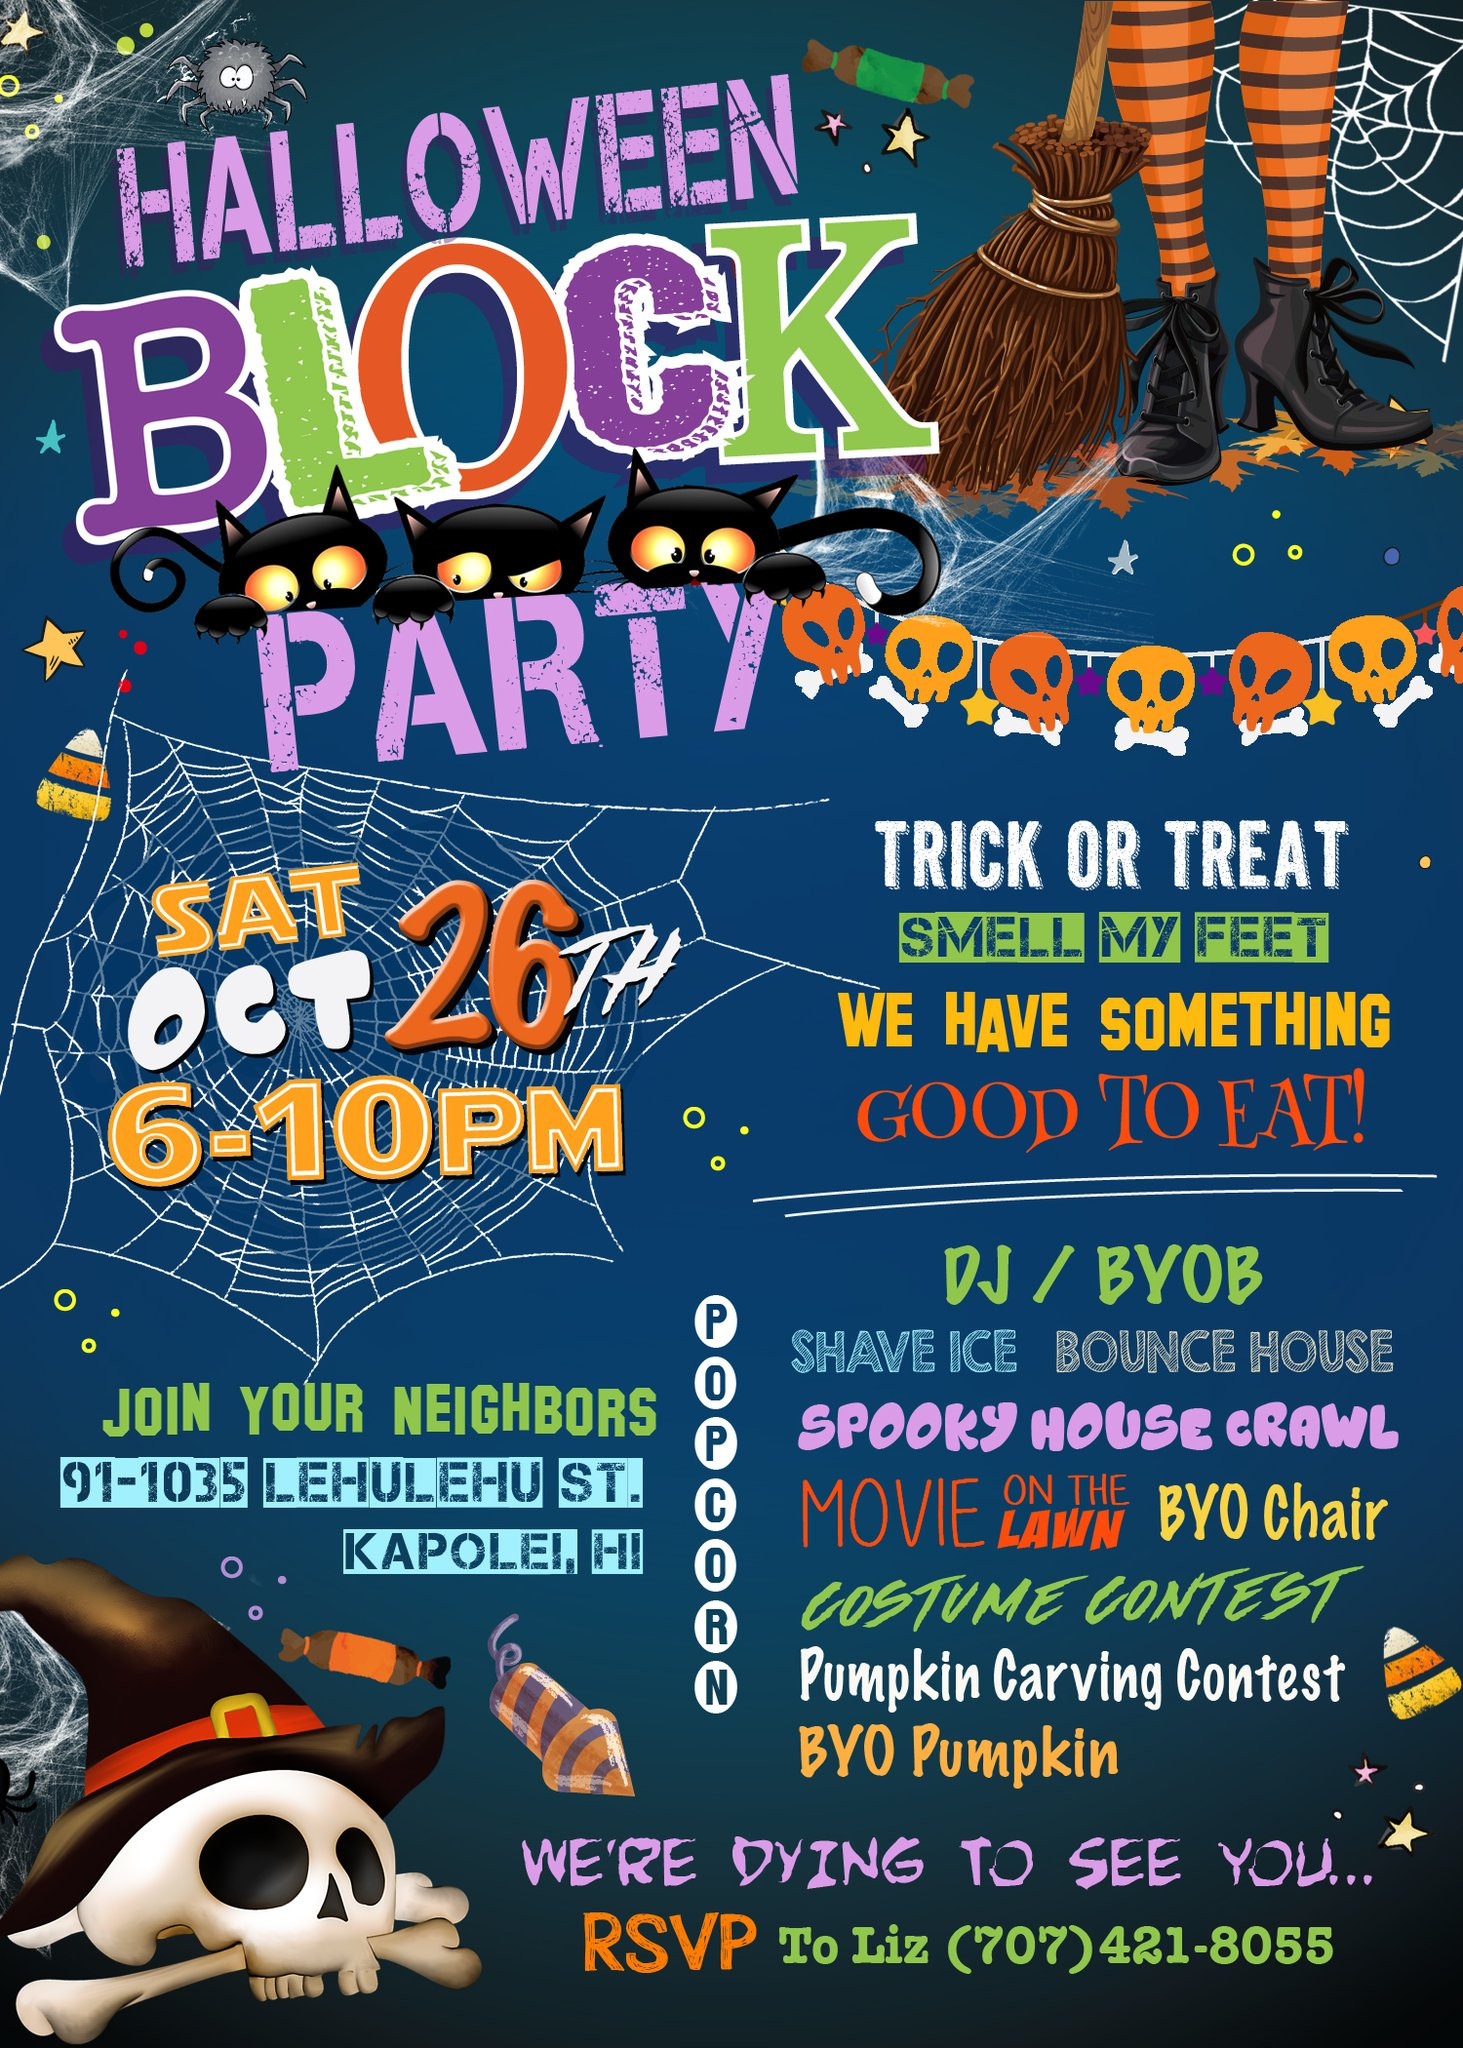 Neighborhood Halloween Block Party Ideas
 Children s Halloween Block Party Invitation Fun